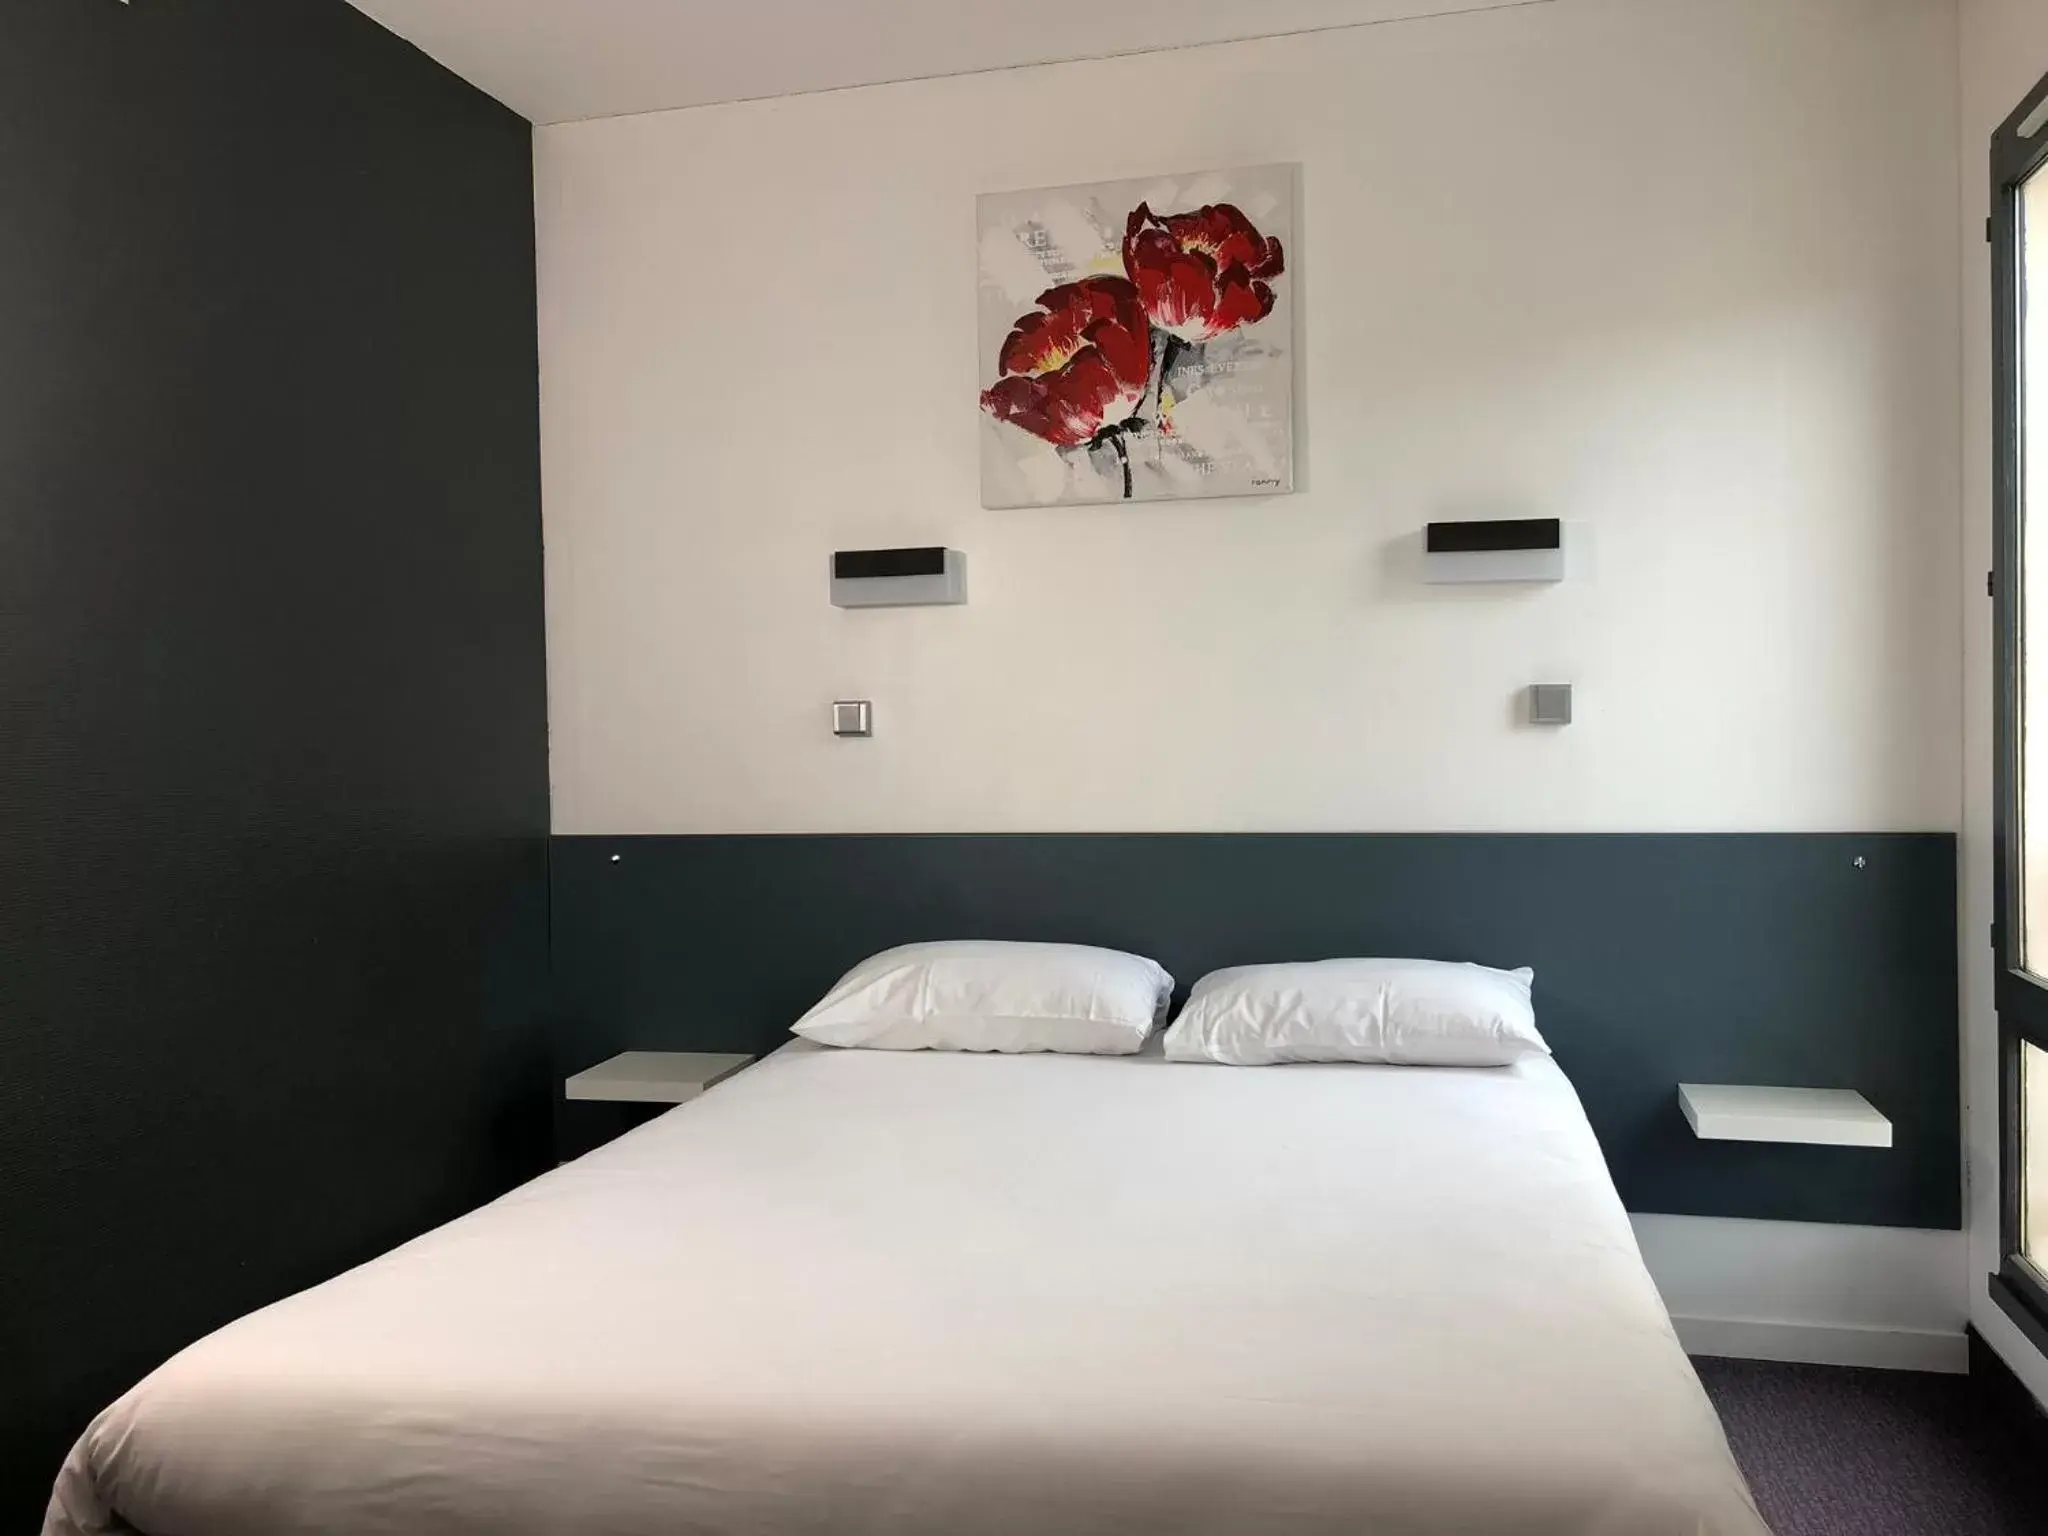 Bed in HALT HOTEL - Choisissez l'Hôtellerie Indépendante